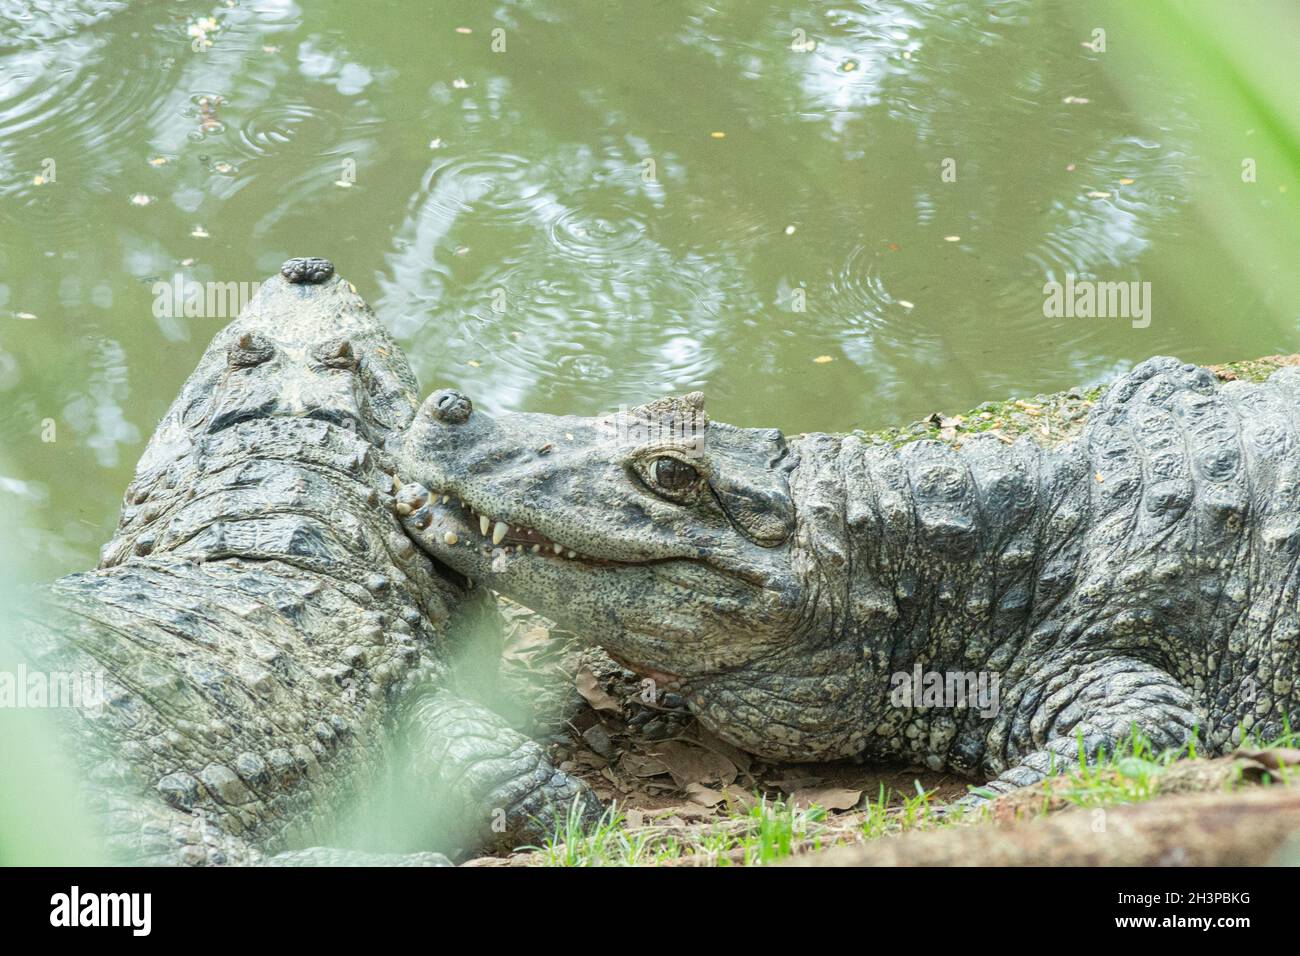 Zwei Alligatoren mit gelbem Bramble, die sich am Ufer eines Sees ausruhen und sonnen. Der Alligator ist ein natürliches Raubtier an der Spitze der Nahrungskette. Stockfoto